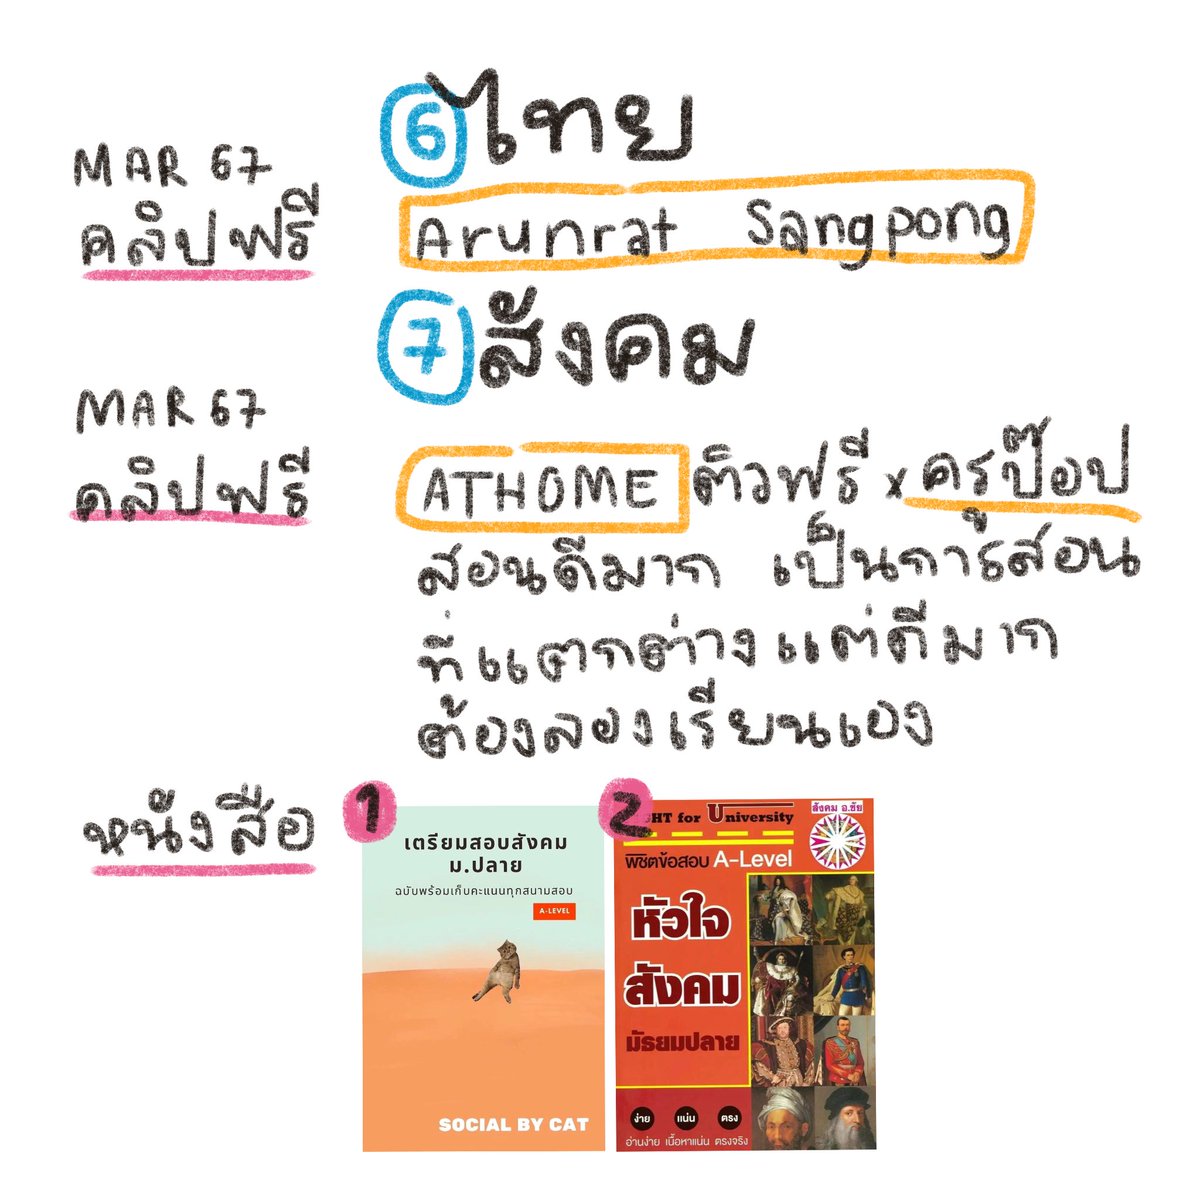 💓ไทย🌟กราบ ครูไทยที่สอนภาษาไทยให้คนไทยรู้เรื่องที่สุด คลิปที่อธิบายละเอียด มี! สรุป มี! จบ ดูคลิปเดียว จดสรุปอีกนิดหน่อย คะแนนดี จบ
🌟ไม่มีหนังสือ
💓สังคม🌟ครูป๊อป! หนังสือแมวส้ม! เรียนคู่กัน เรียนครูป๊อปก่อนแล้วมาอ่านแมวส้มบทนั้น เราทำแบบนี้2พาร์ทจาก5 ลองทำข้อสอบmock ได้50/100